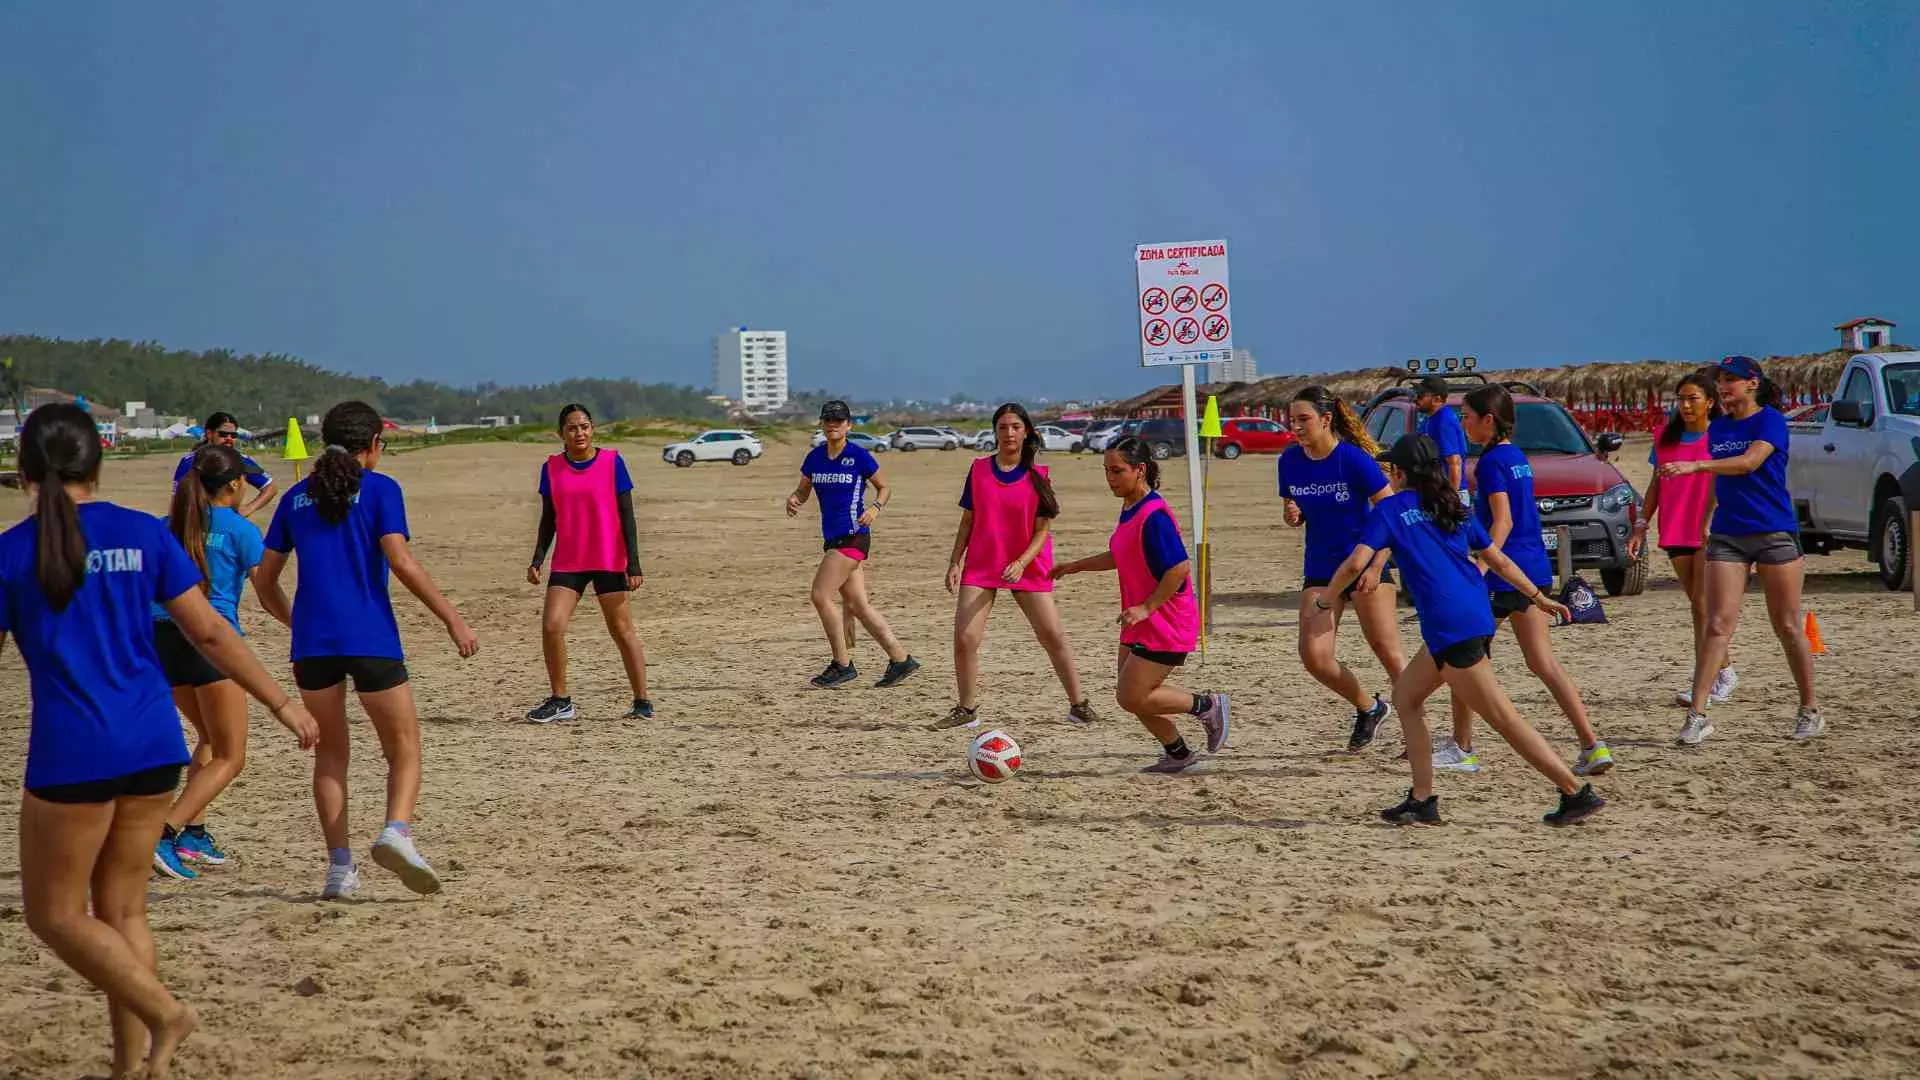 Alumnas jugando fútbol en equipo en la playa